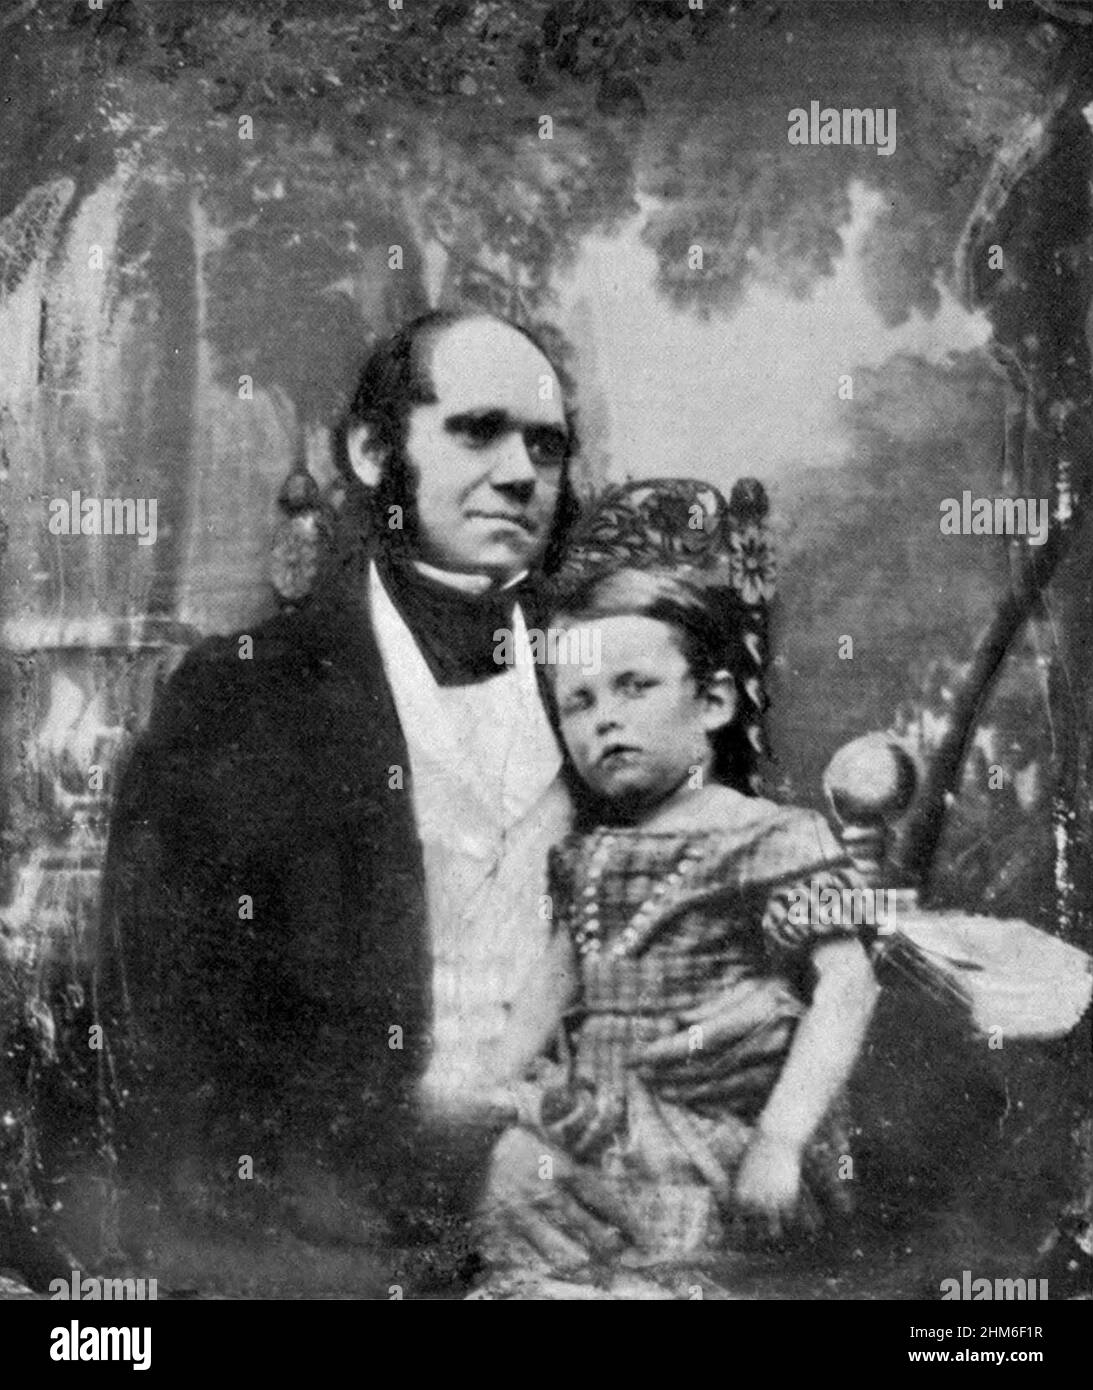 Ritratto dello scrittore inglese e fondatore della teoria della selezione baturale, Charles Darwin con il figlio maggiore William. Foto del 1842 quando aveva 33 anni. Foto Stock